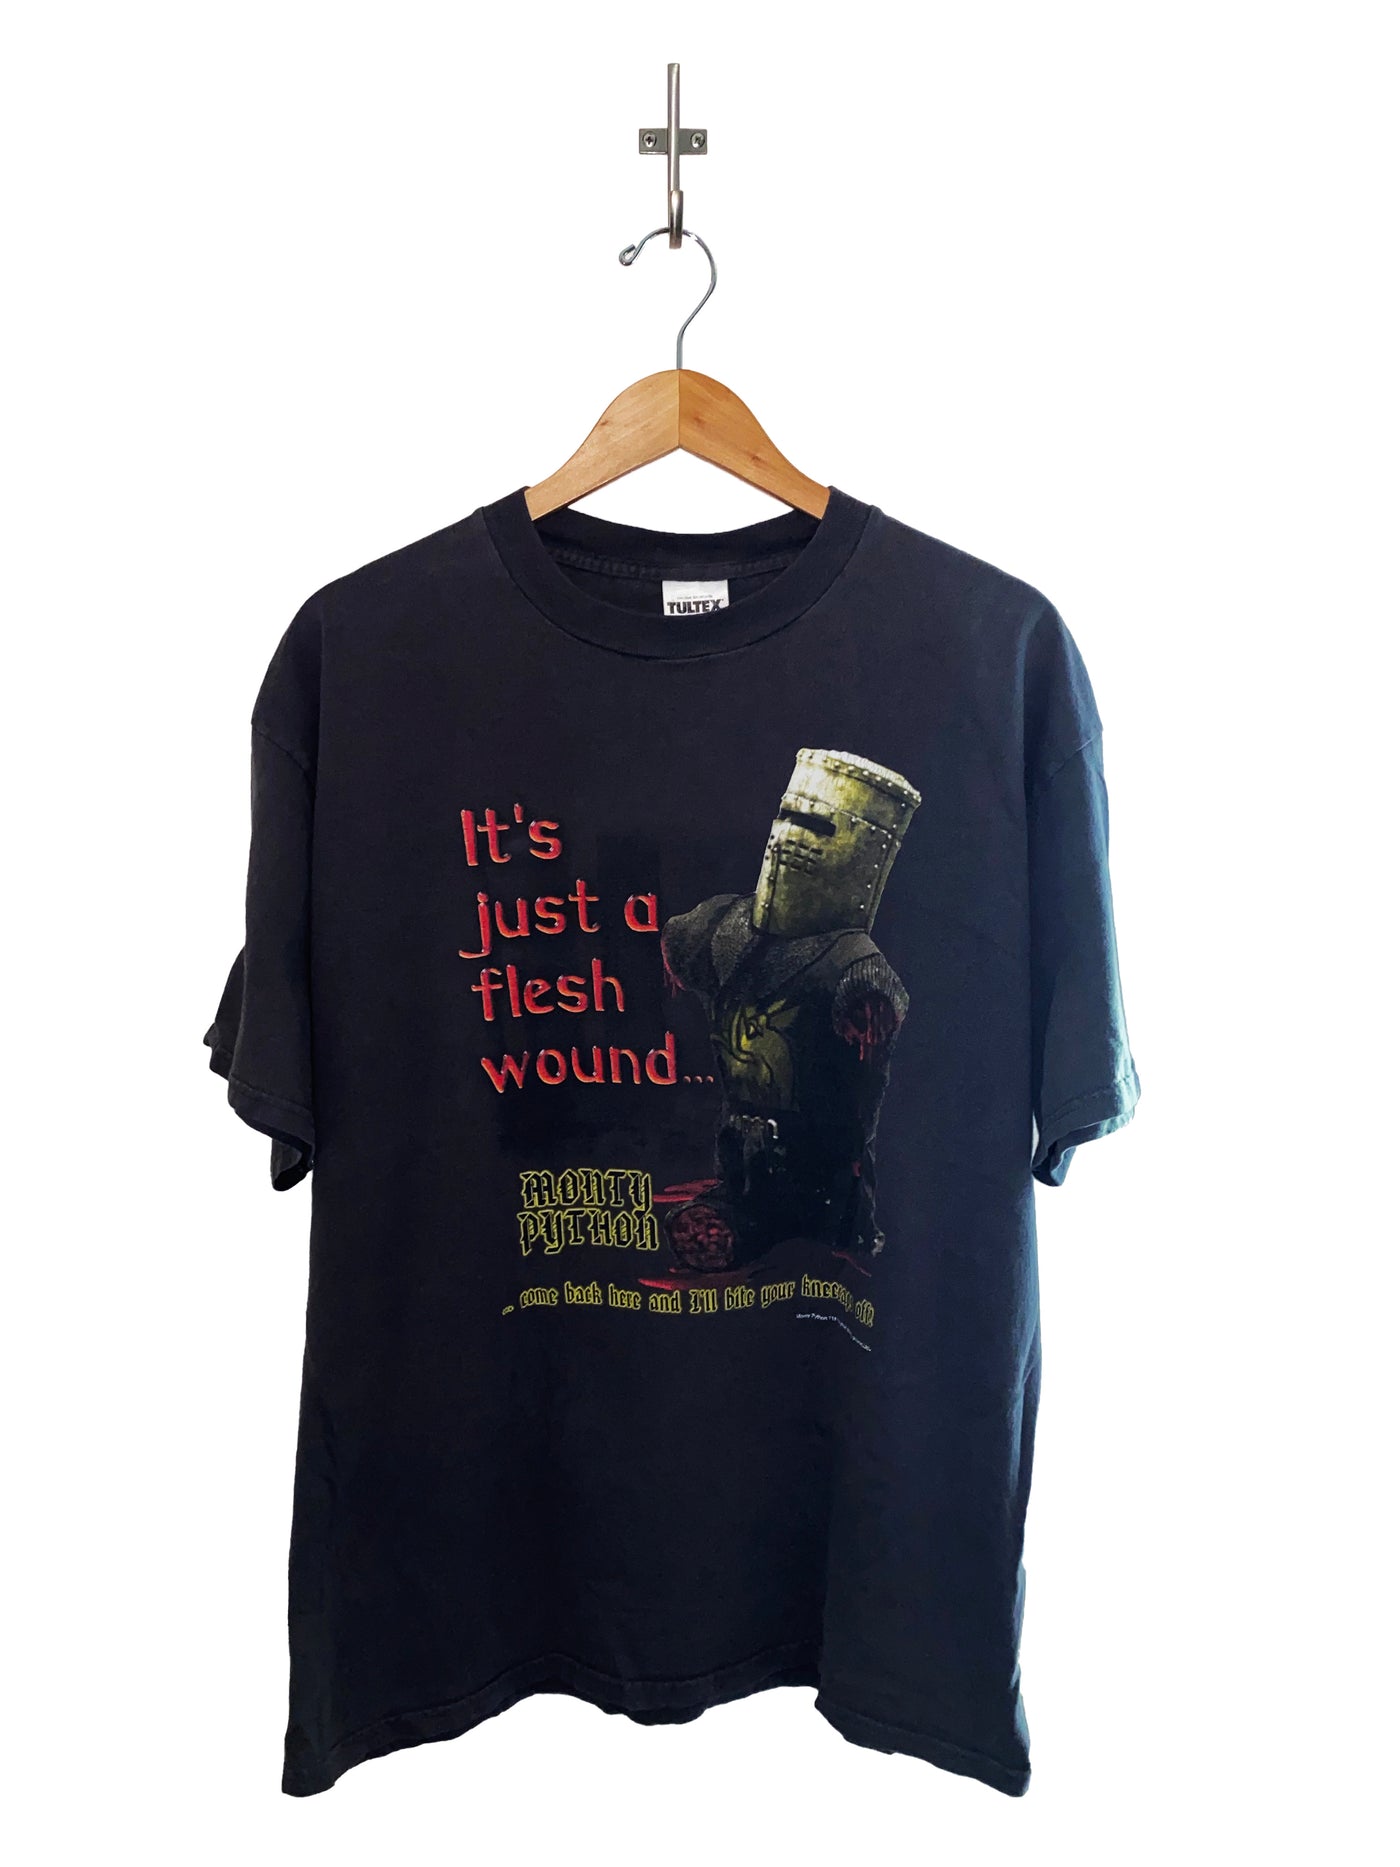 Vintage 2001 Monty Python ‘Flesh Wound’ T-Shirt